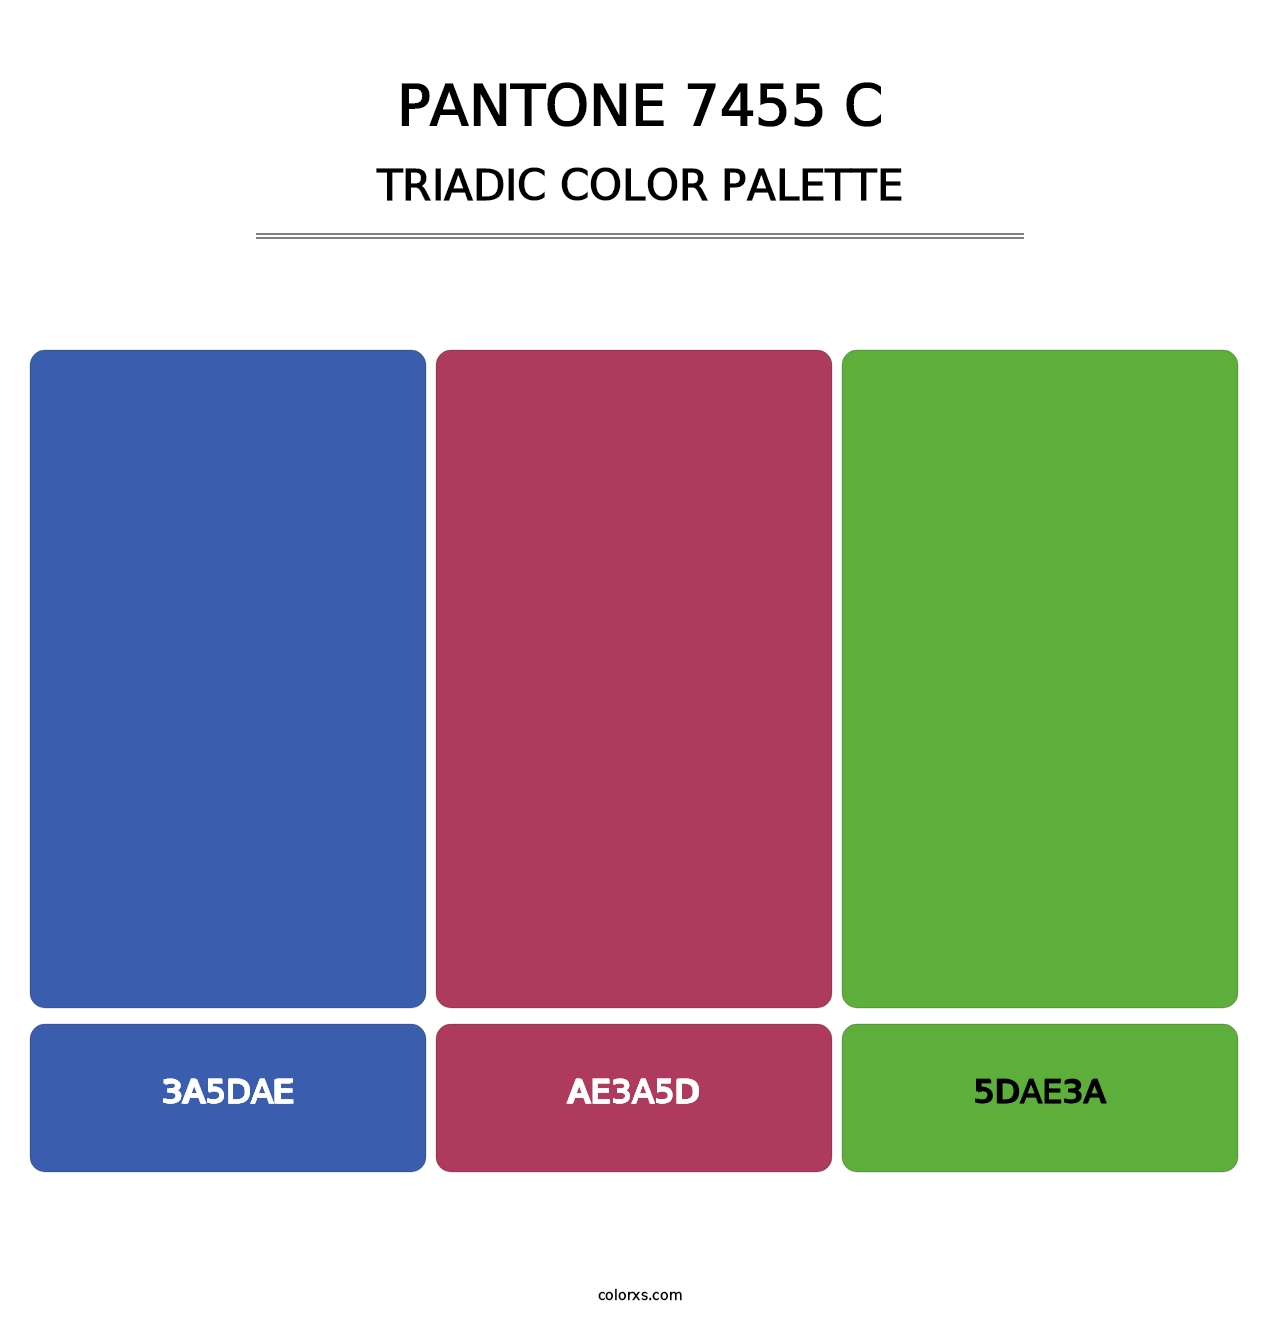 PANTONE 7455 C - Triadic Color Palette